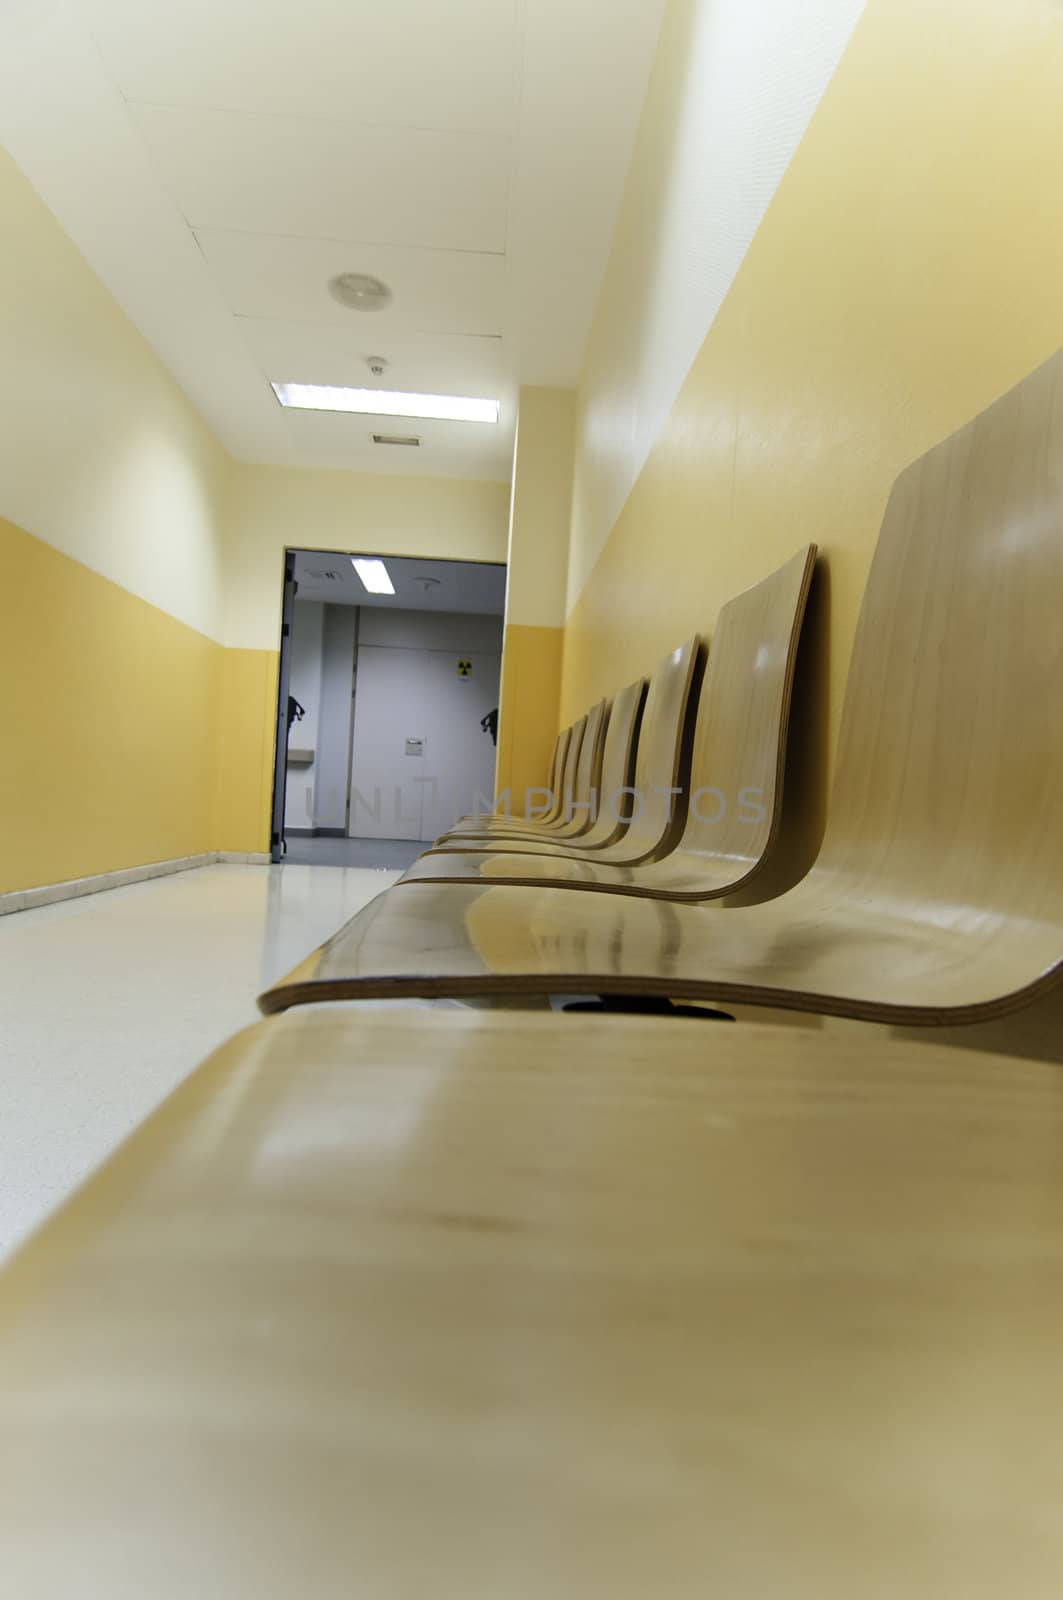 Hospital corridor by FernandoCortes